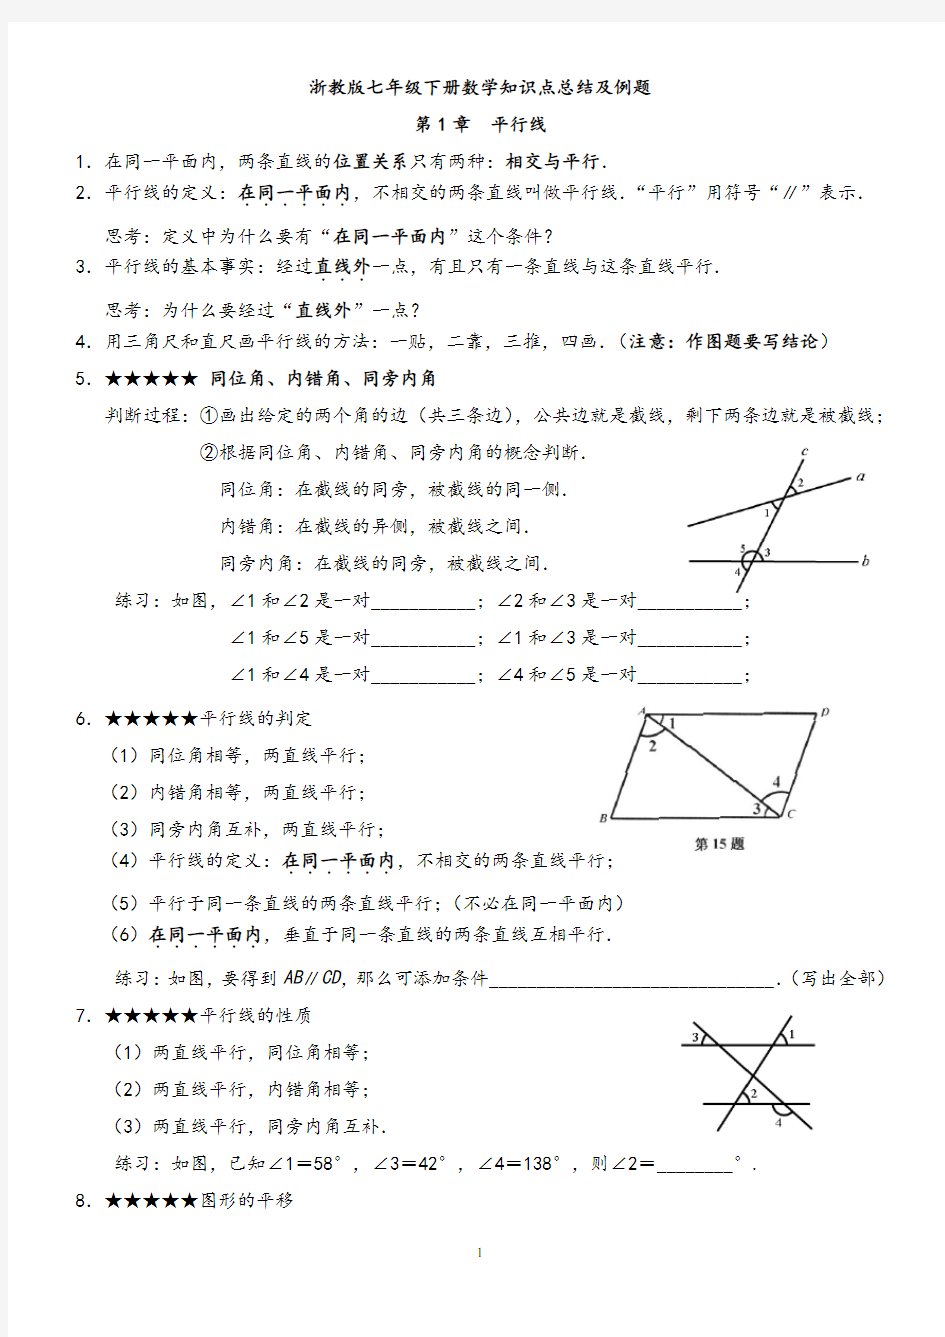 浙教版七年级下册数学知识点总结及例题教学内容